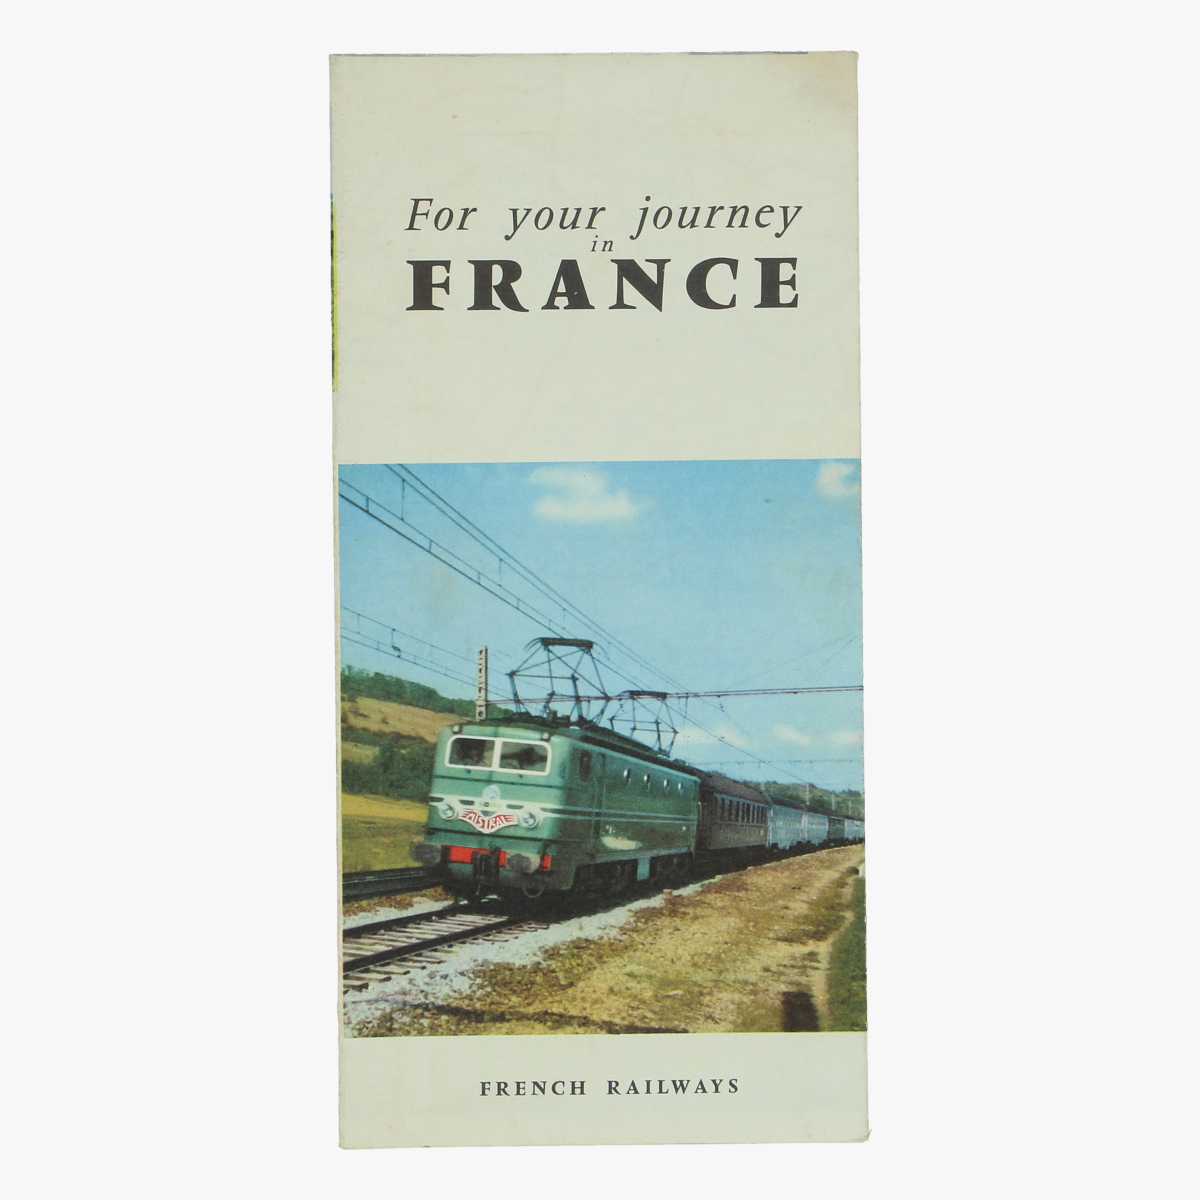 Afbeeldingen van expo 58  folder for your journey in france french railways 1958